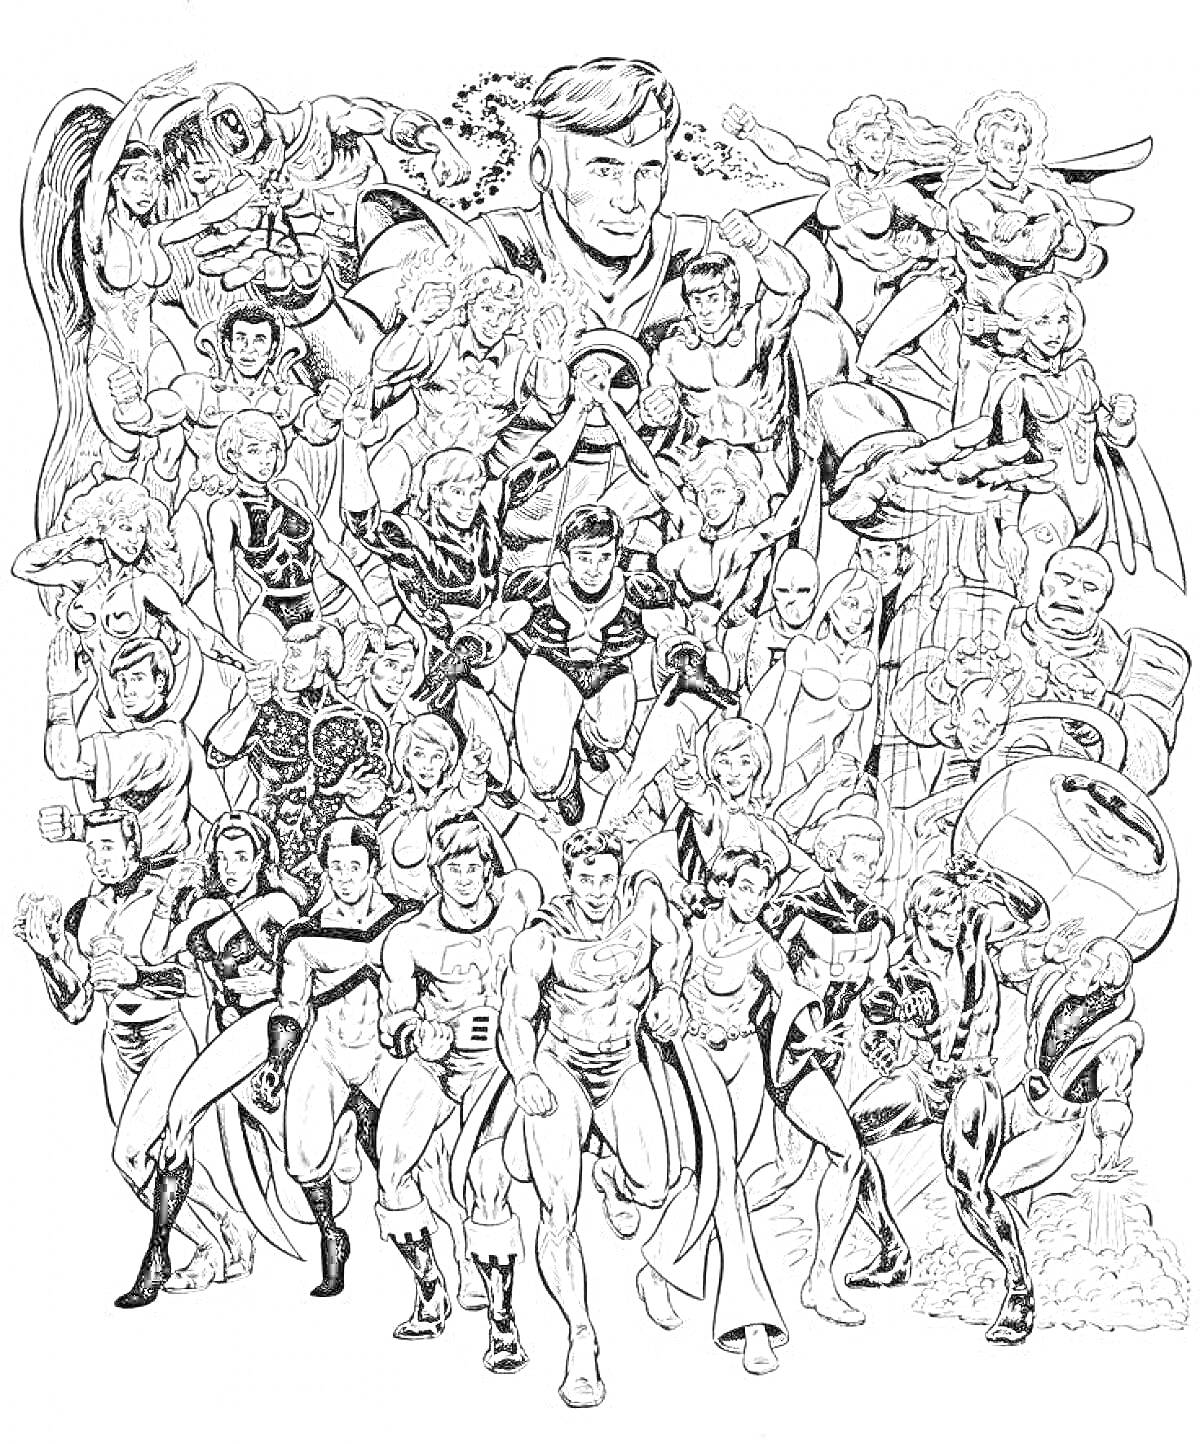 Раскраска Герои Марвел: Коллективное изображение персонажей из вселенной Marvel, включая самолёт, броню, магические силы и динамичные позы.